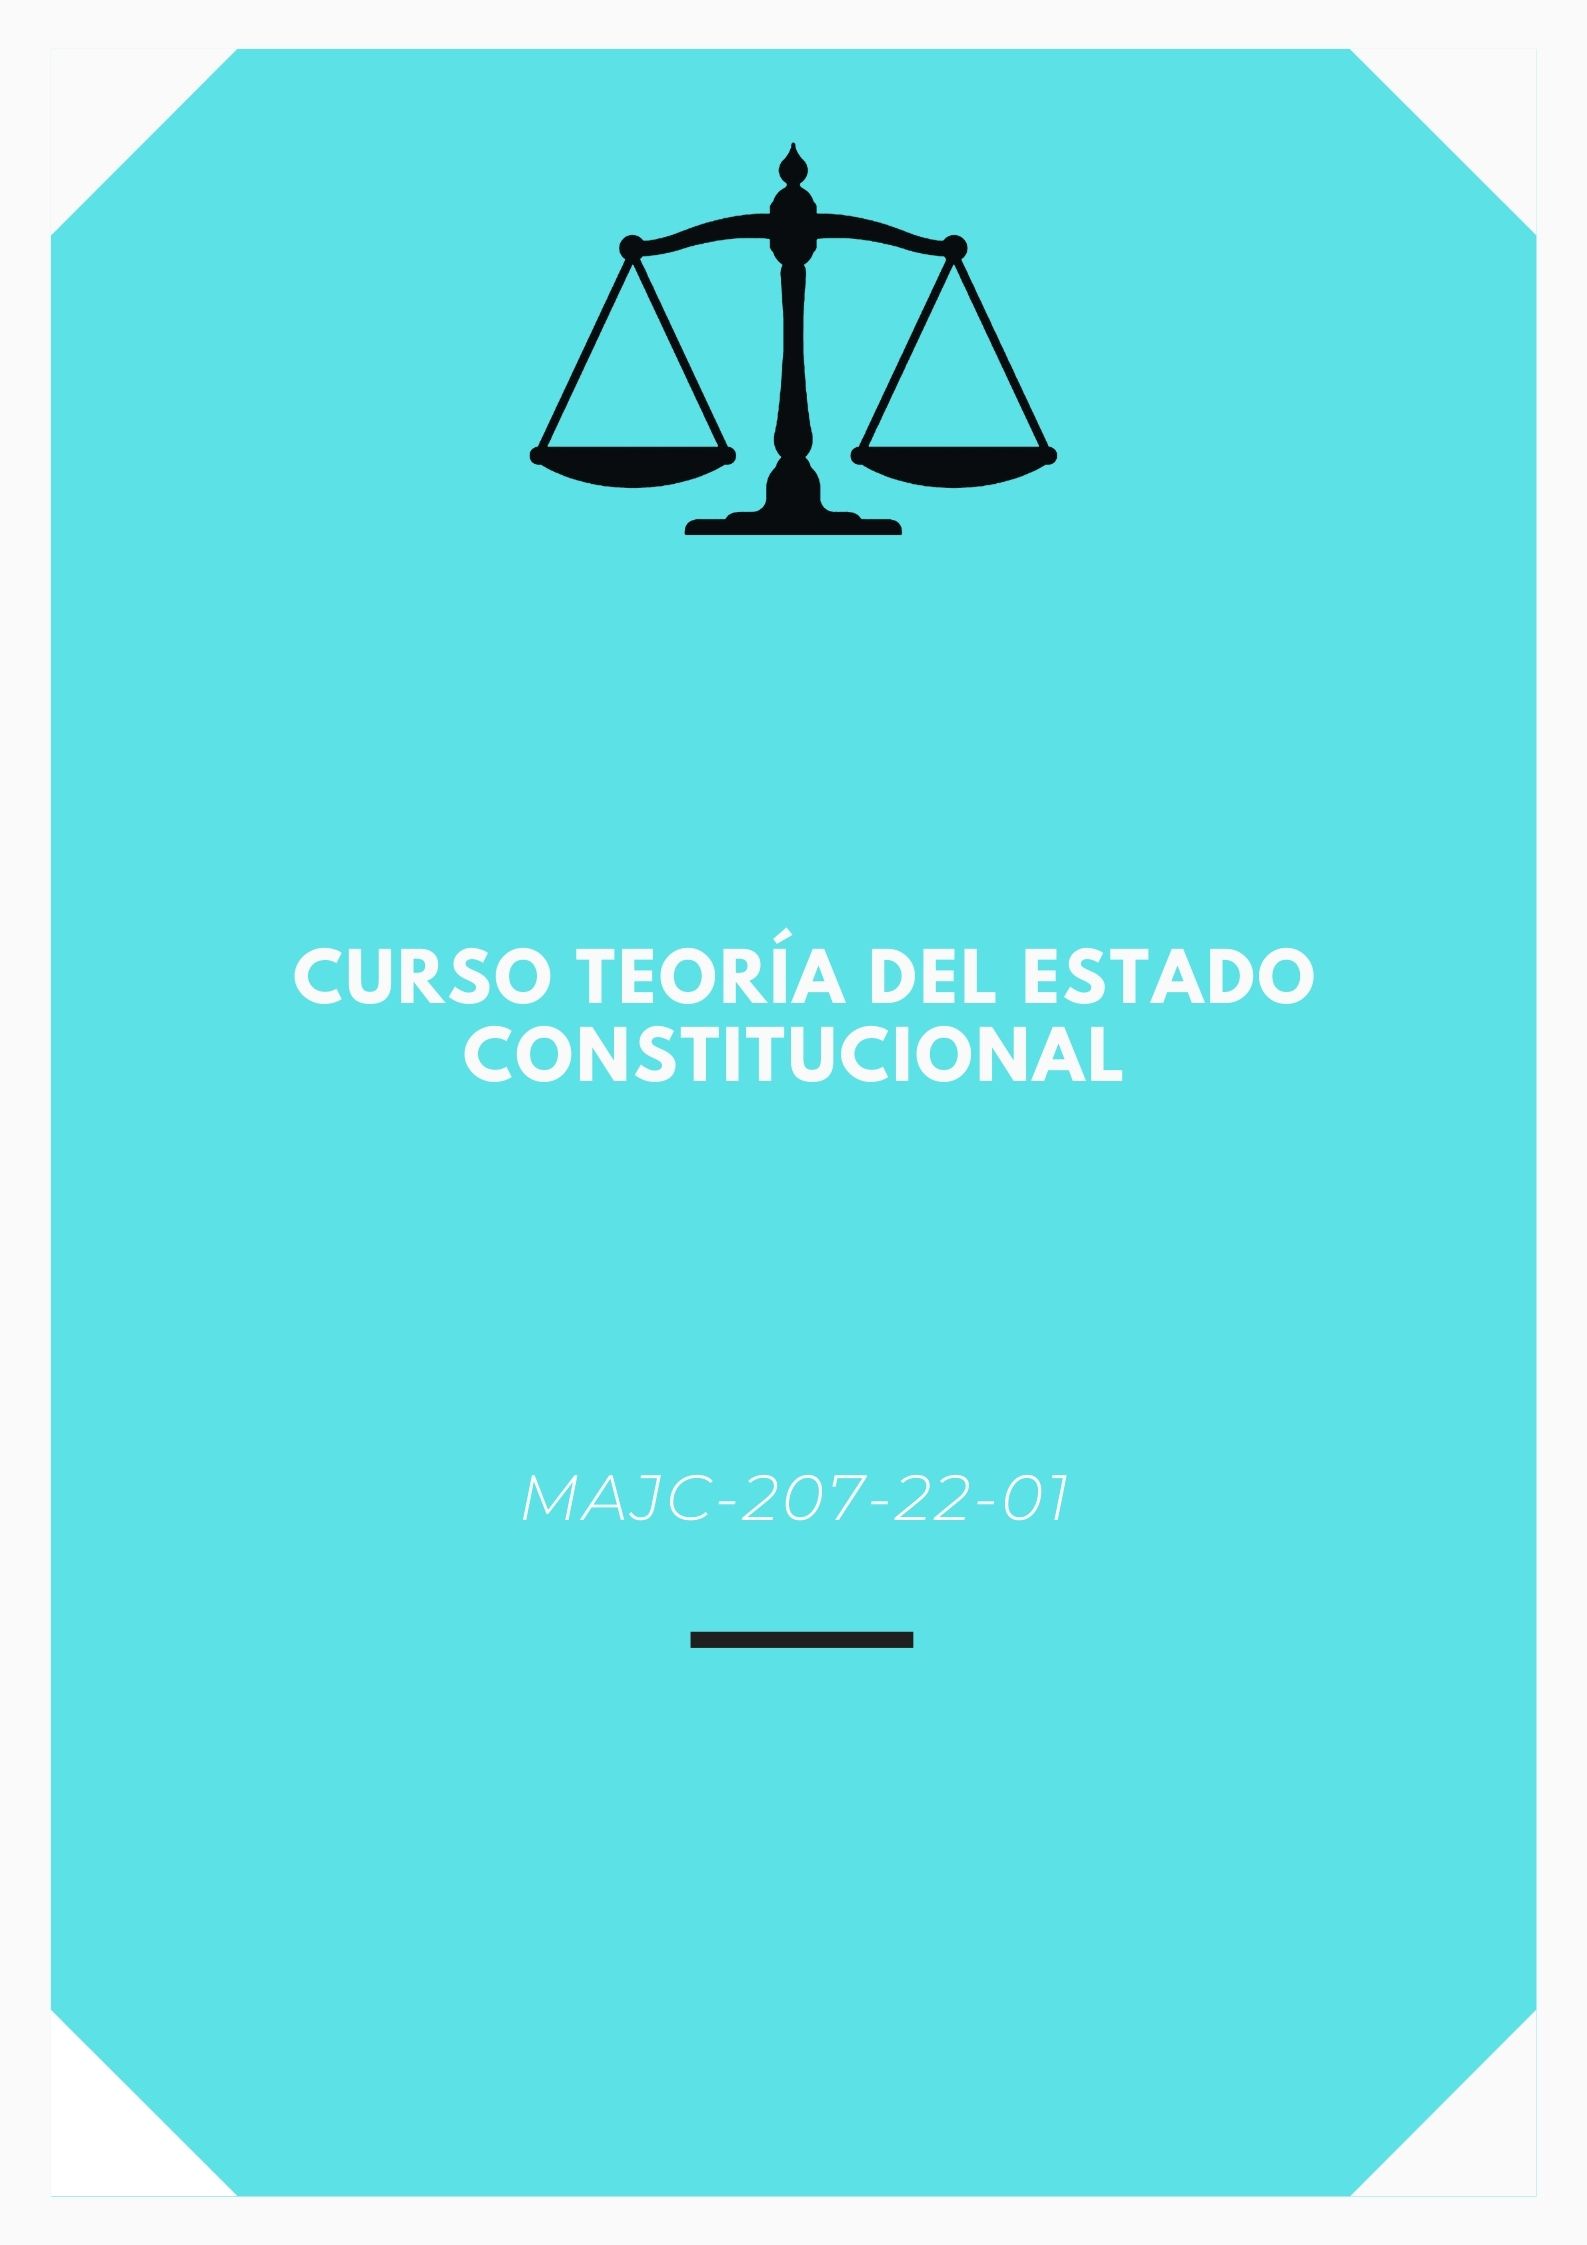 MAJC-207-22-01 Curso Teoría del Estado Constitucional